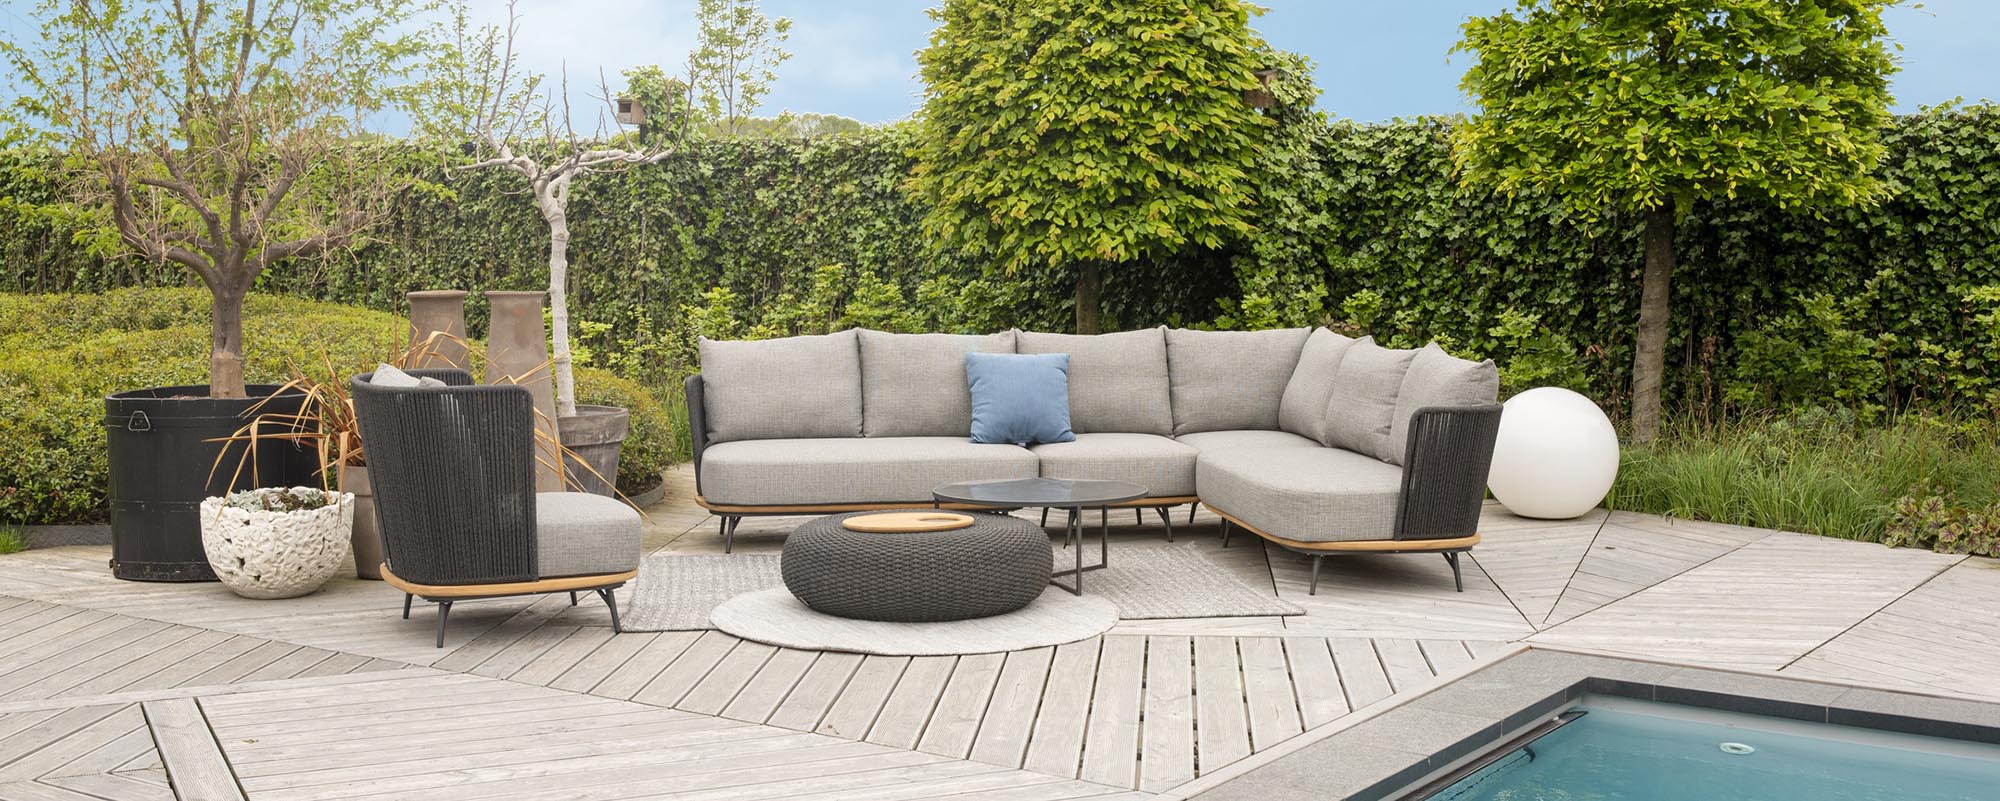 Gartenmöbel | Positano Sofa-Module Garten Superschöne Lounge Lounge